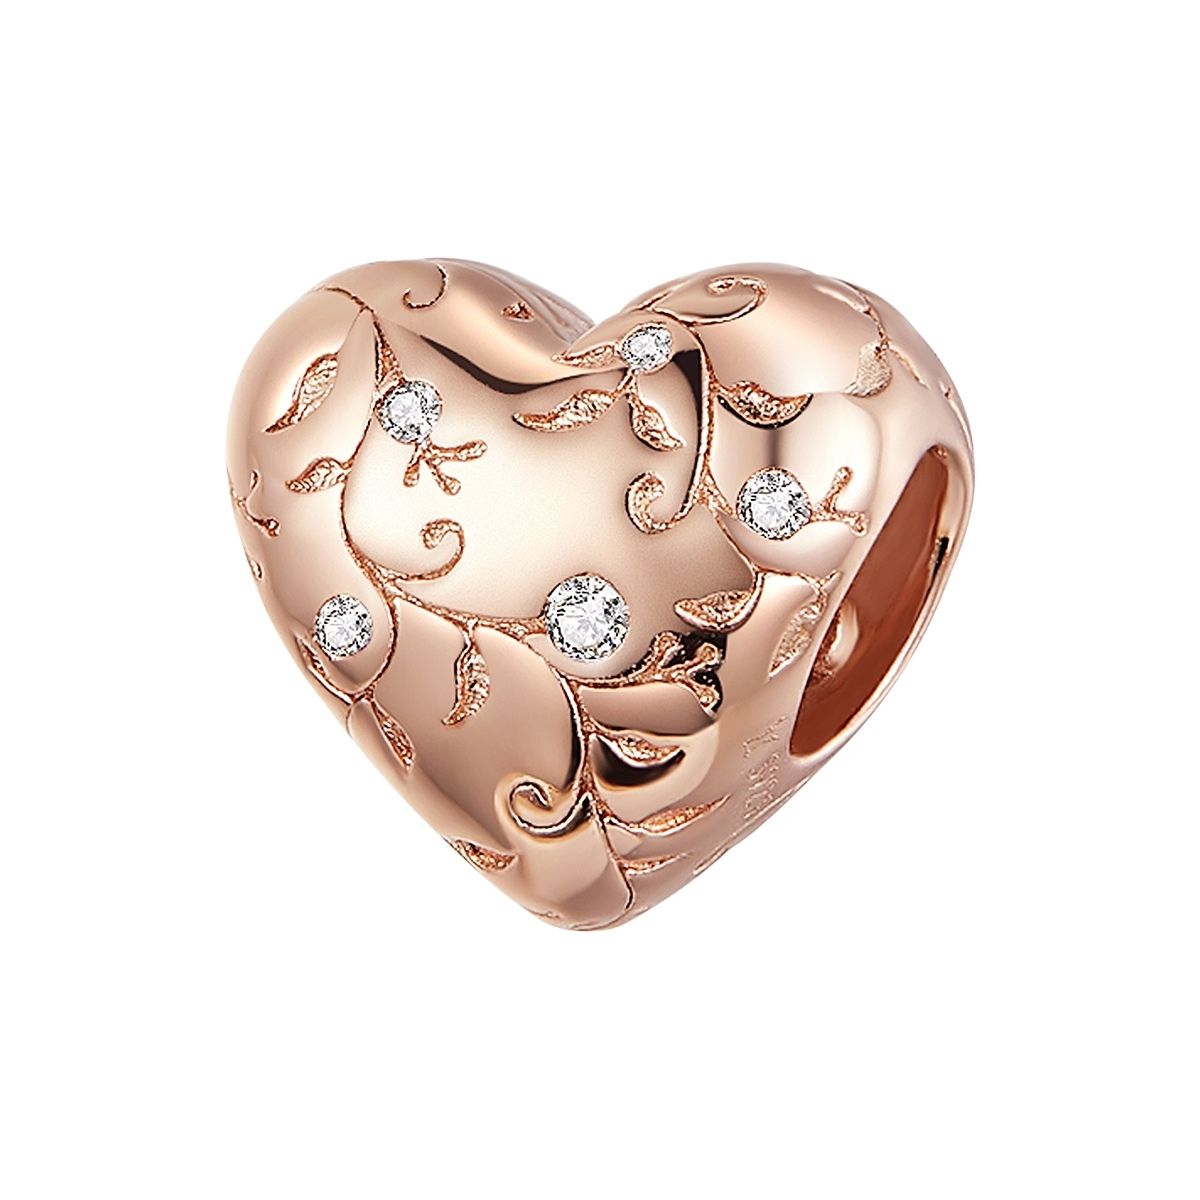 Vintage hart rose gold plated bedel  heart bead  Zilverana  geschikt voor Biagi , Pandora , Trollbeads armband  925 zilver